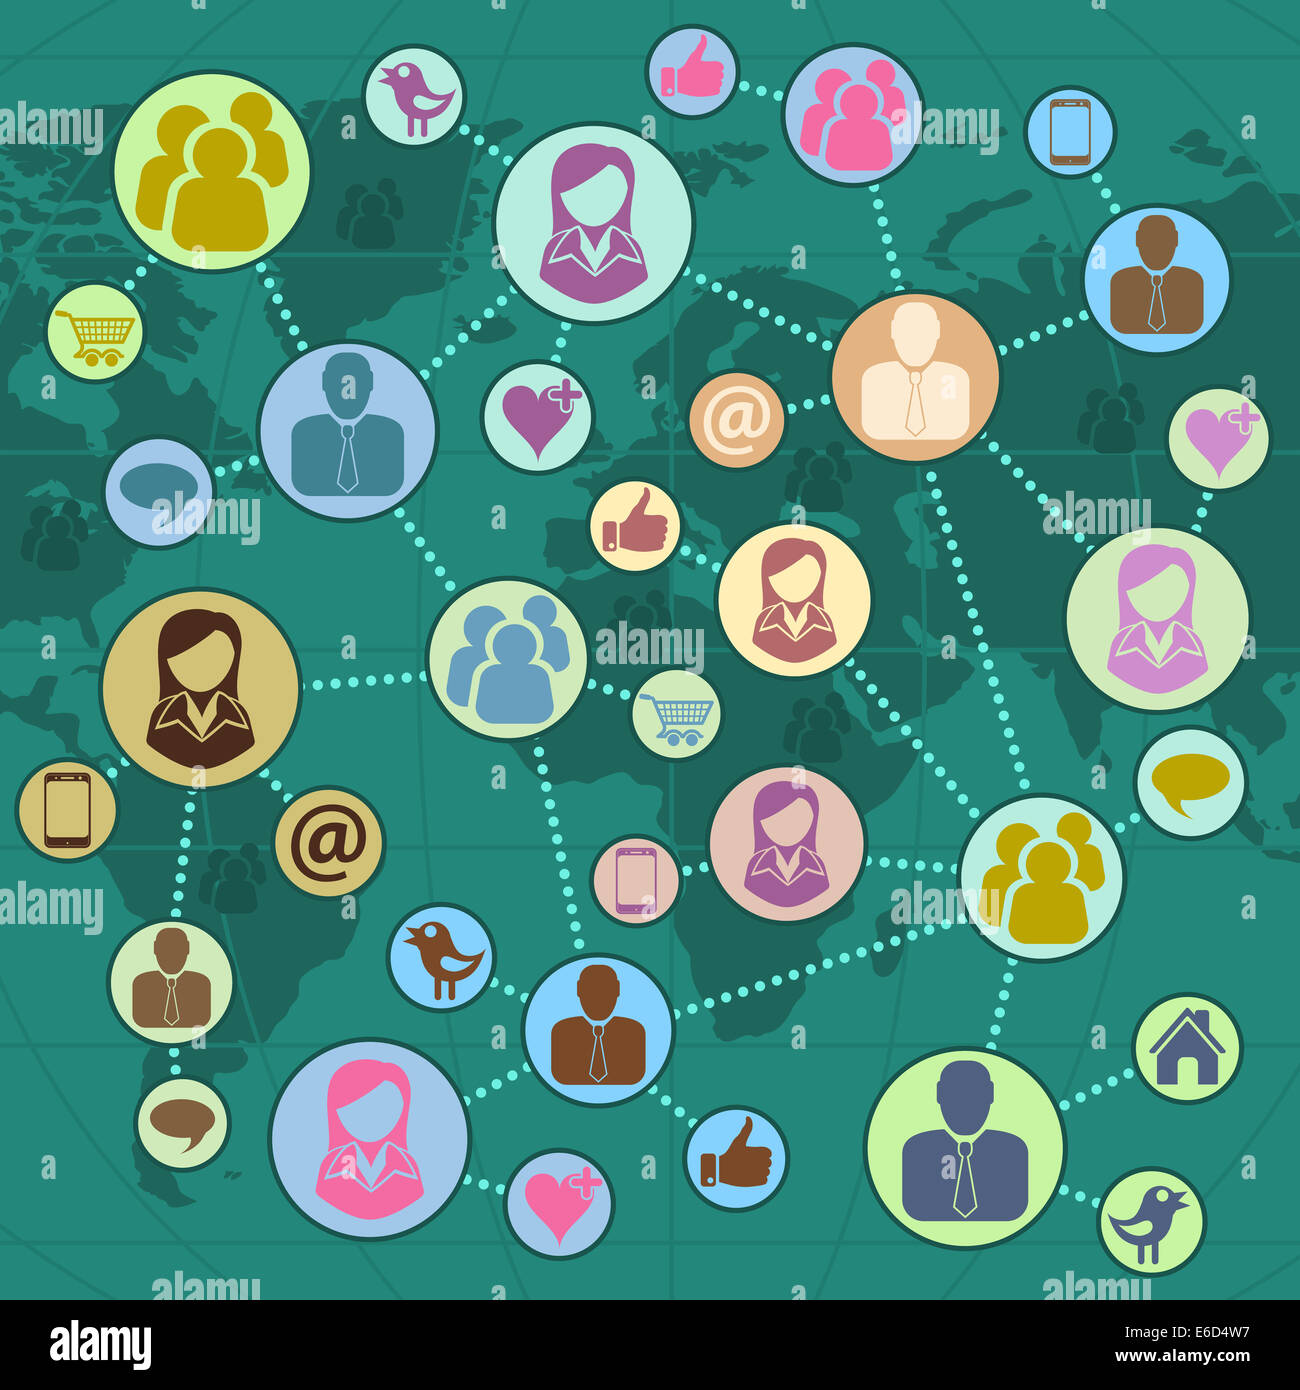 Réseau social à l'échelle mondiale et d'équipe Concept dans une télévision moderne style, avec des icônes comme et Twitter et l'Infographie. L'illustration. Banque D'Images